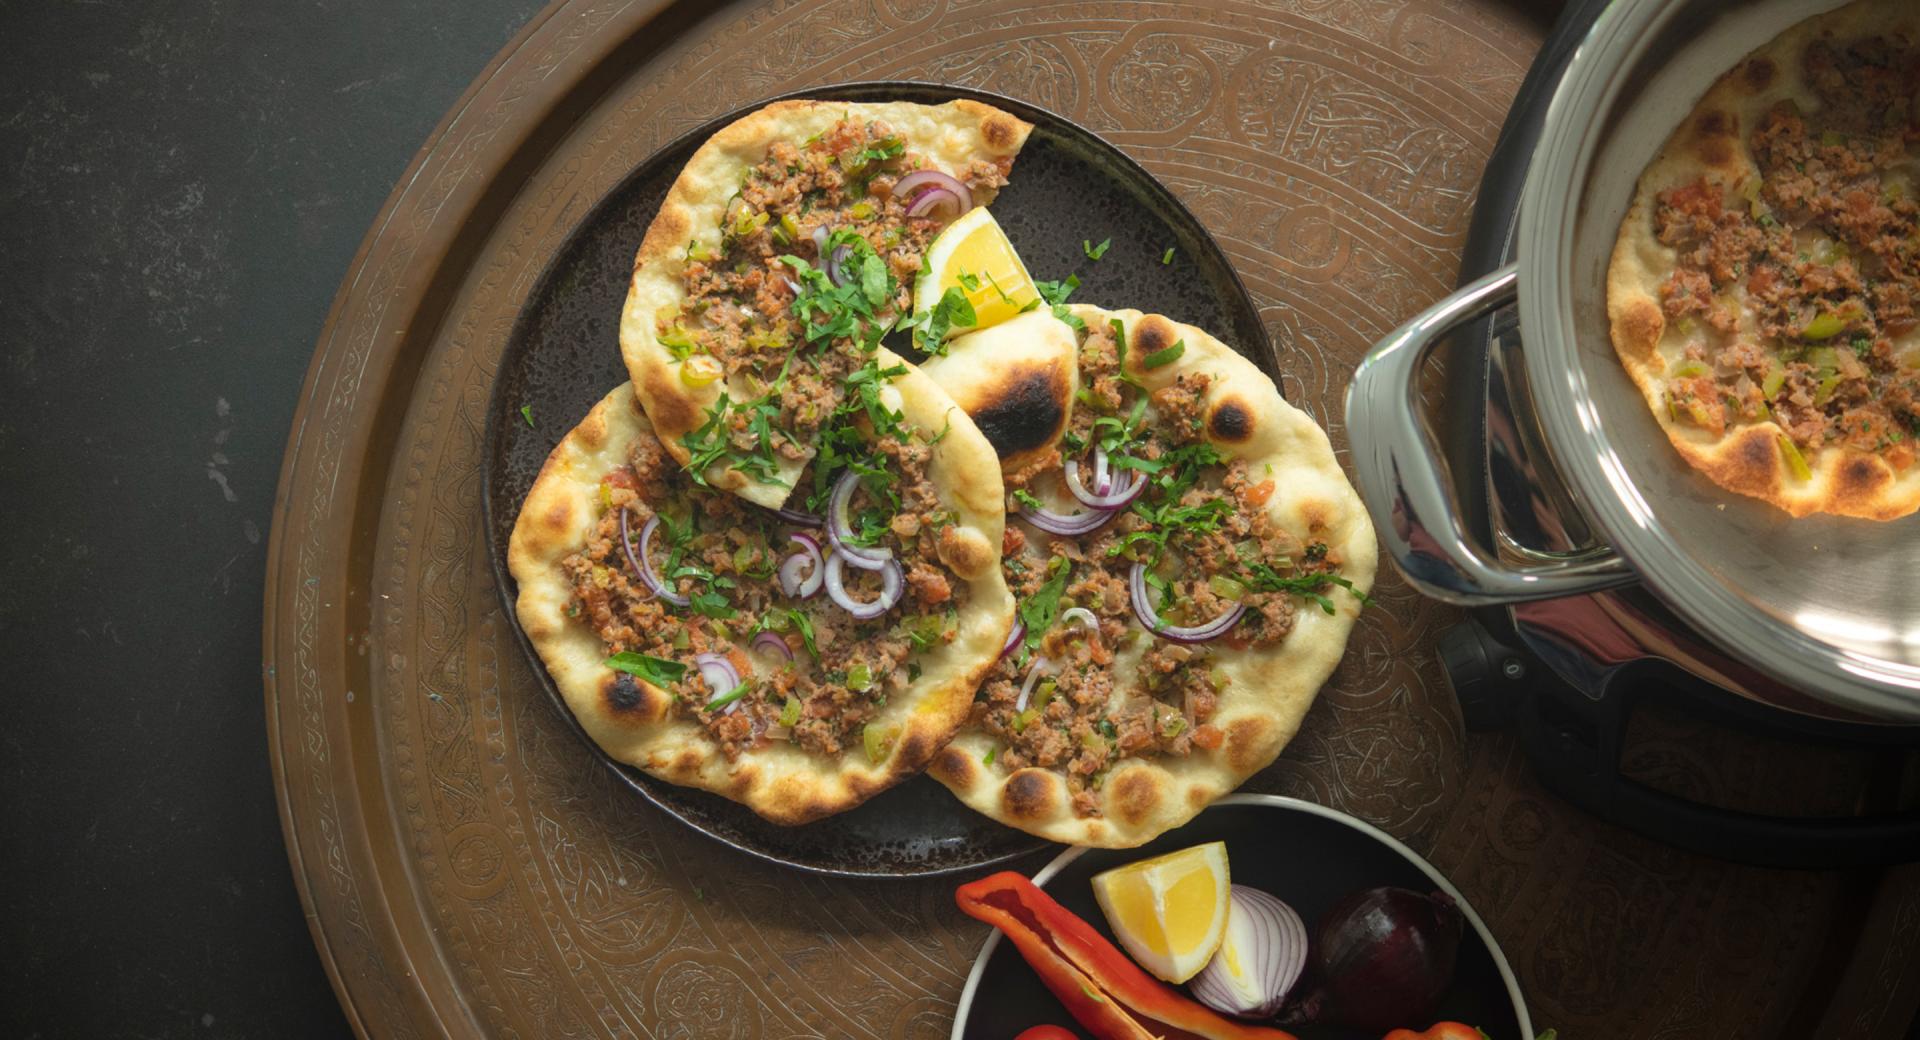 Türkische Pizza (Lahmacun)